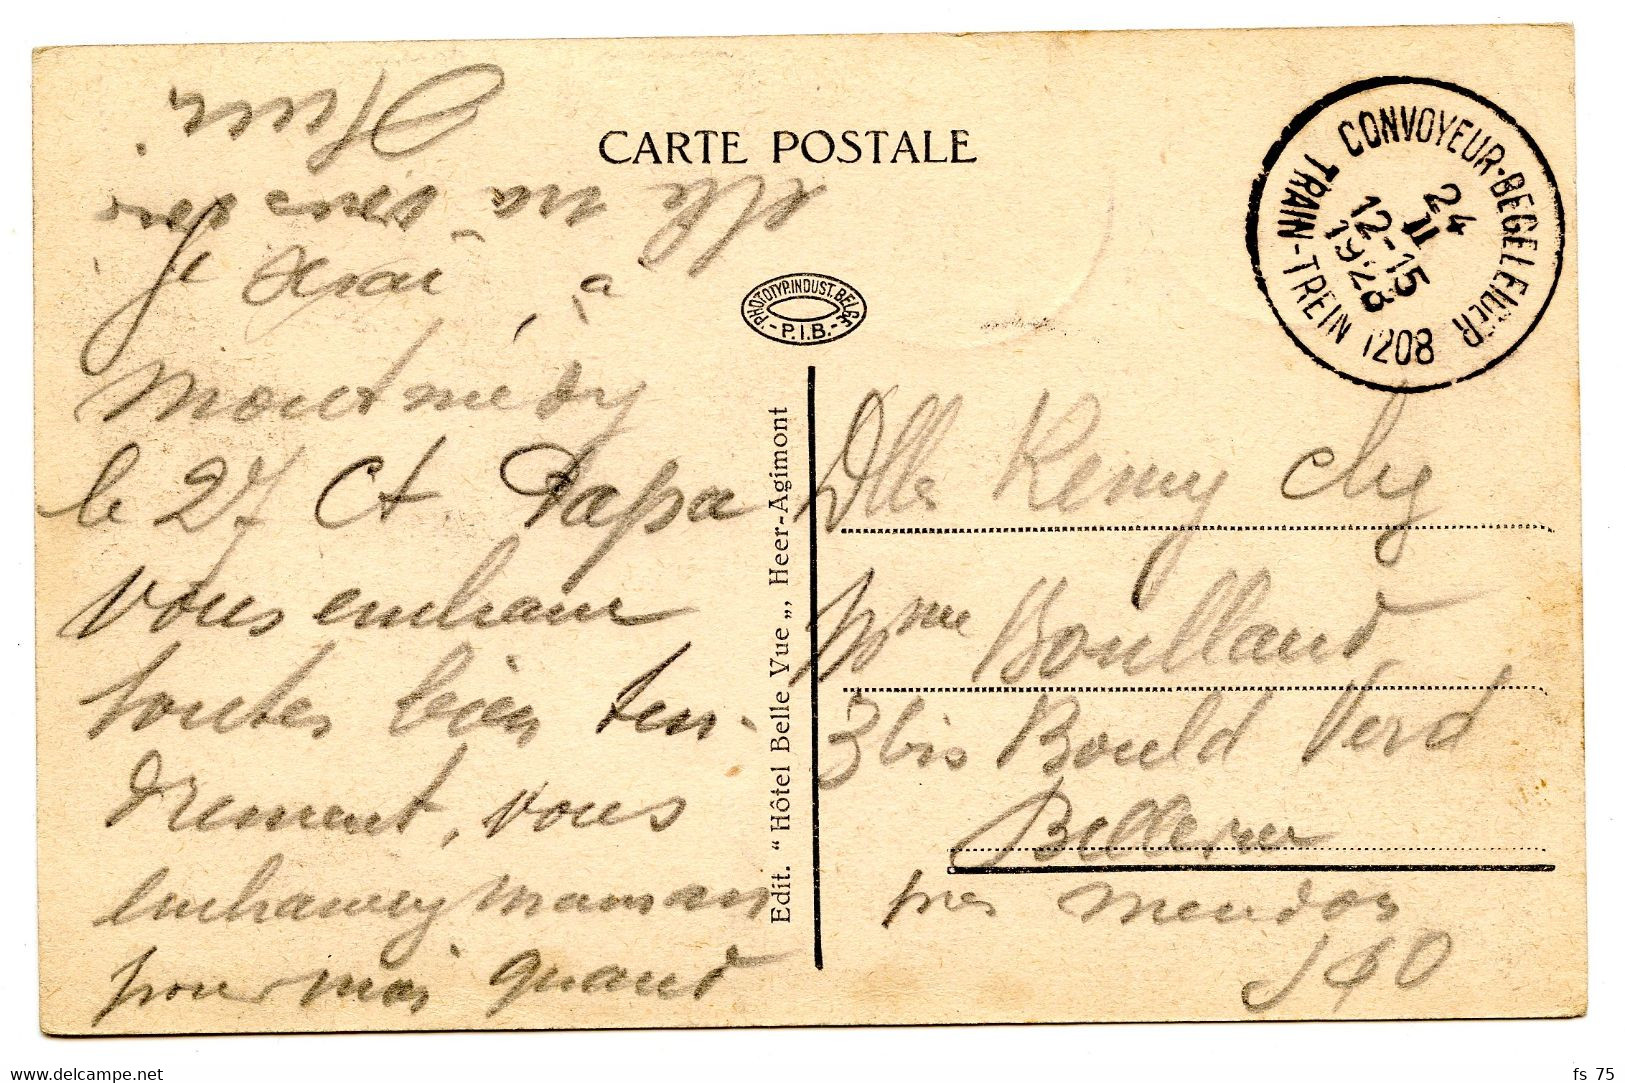 BELGIQUE - COB 193+247+255 HOUYOUX CAD BILINGUE CONVOYEUR STATION TRAIN 1208 SUR CARTE POSTALE, 1928 - Ambulante Stempels